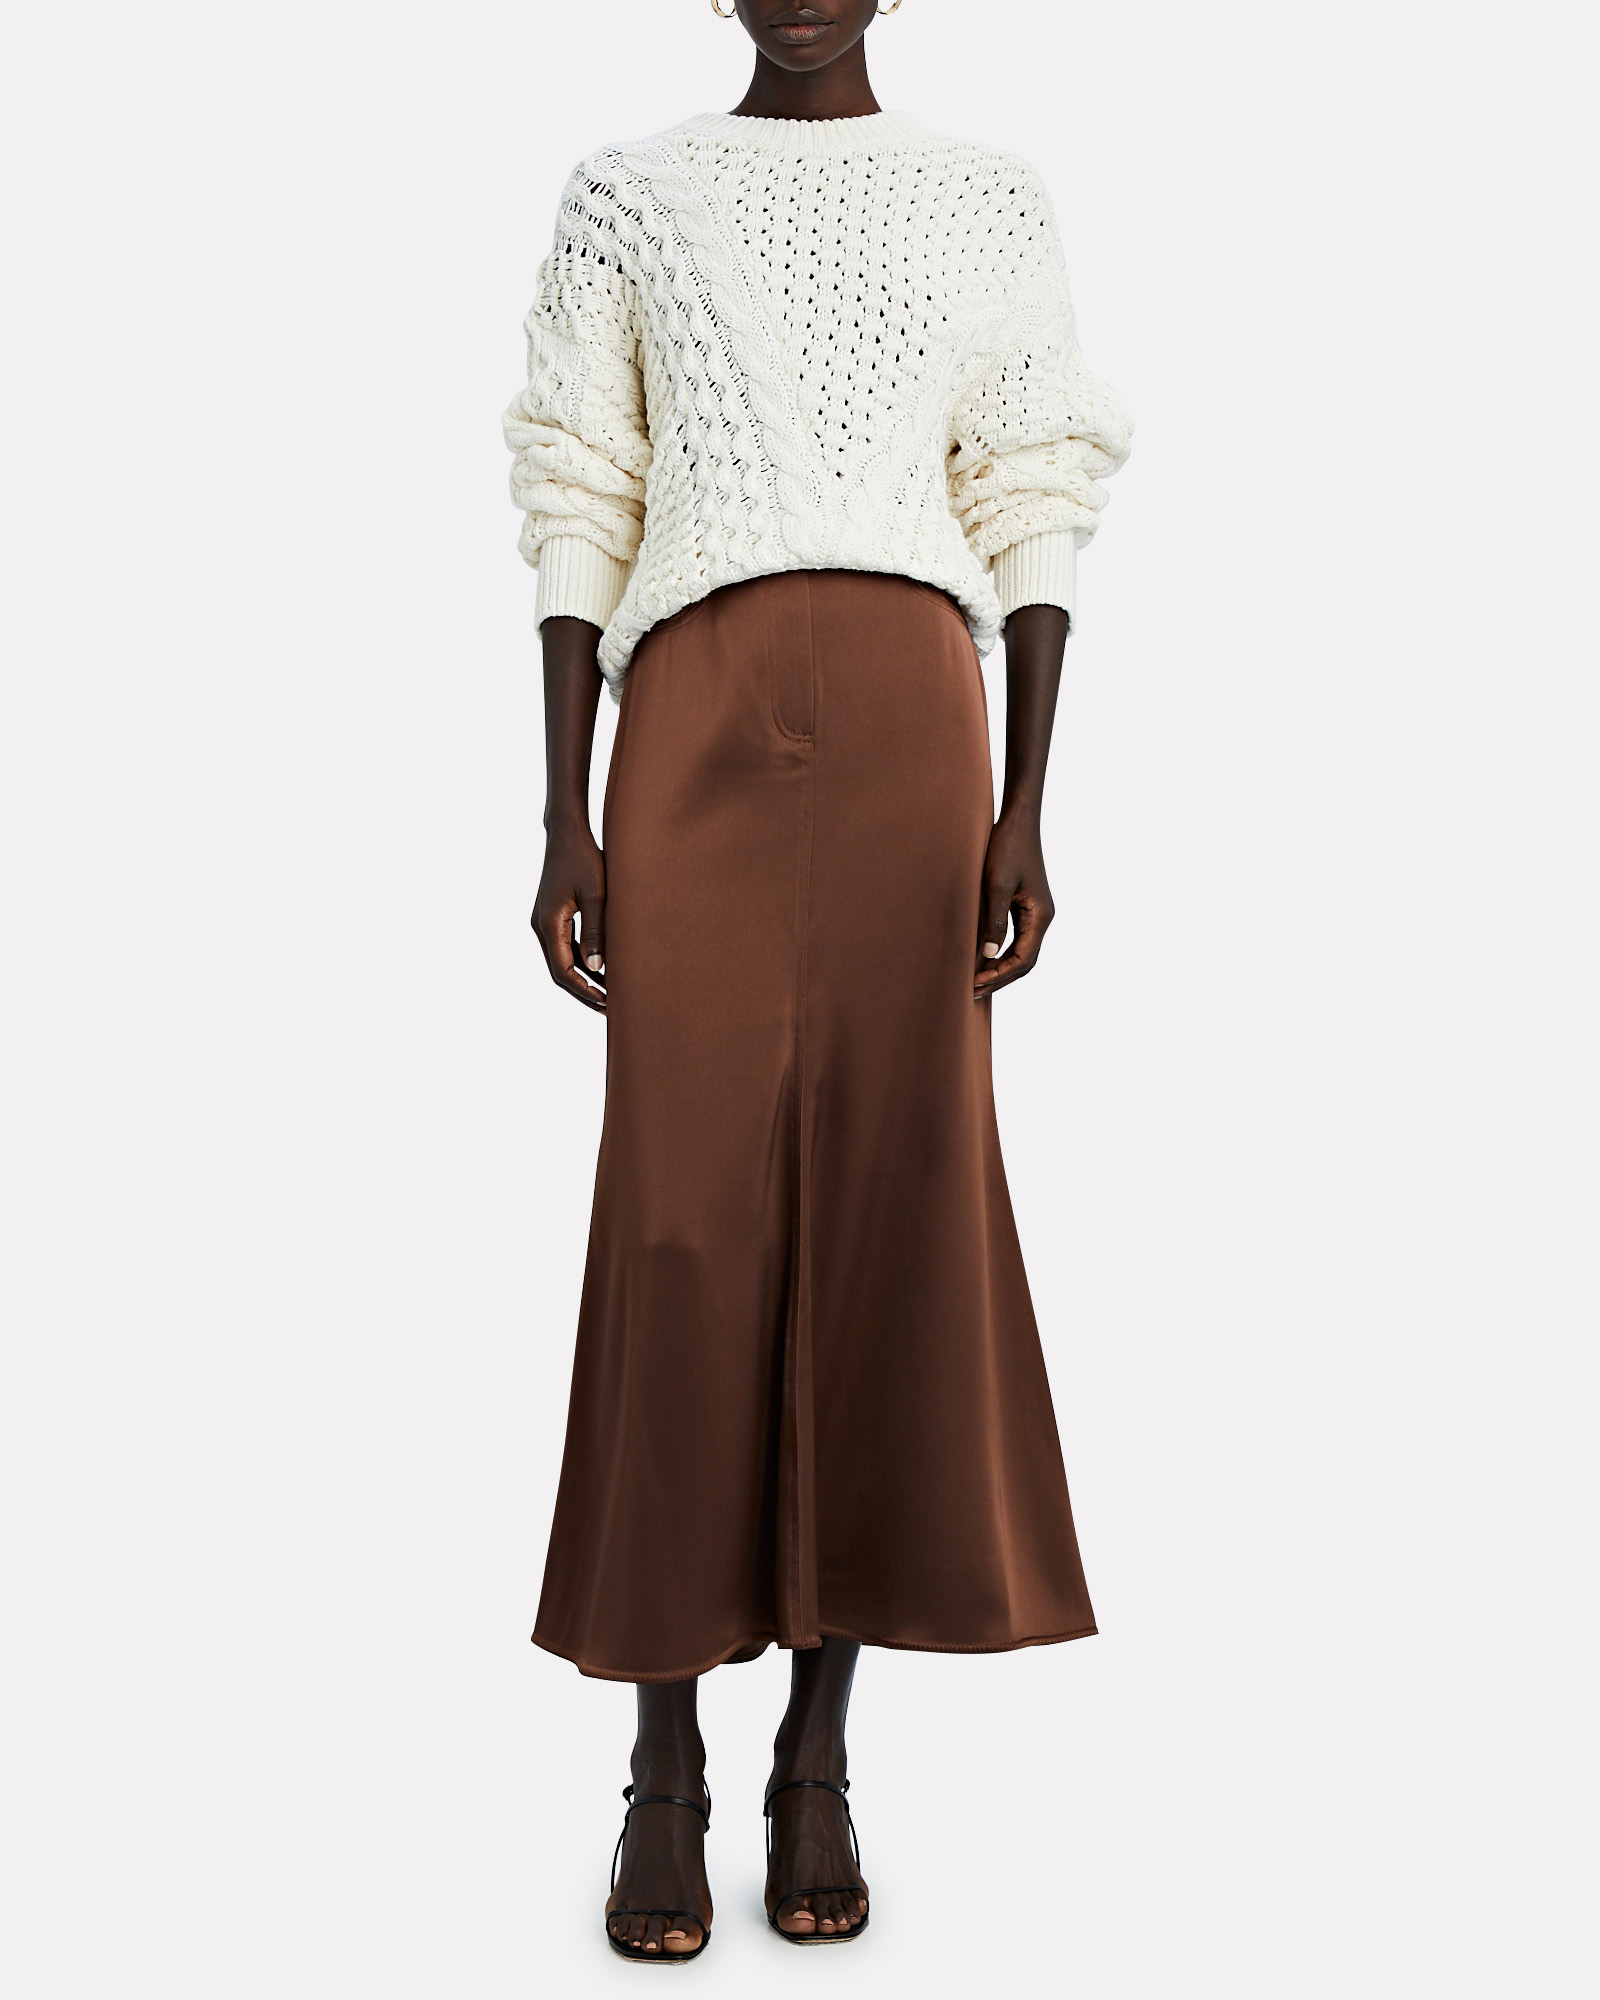 Nanushka Magnolia Satin Midi Skirt | INTERMIX®